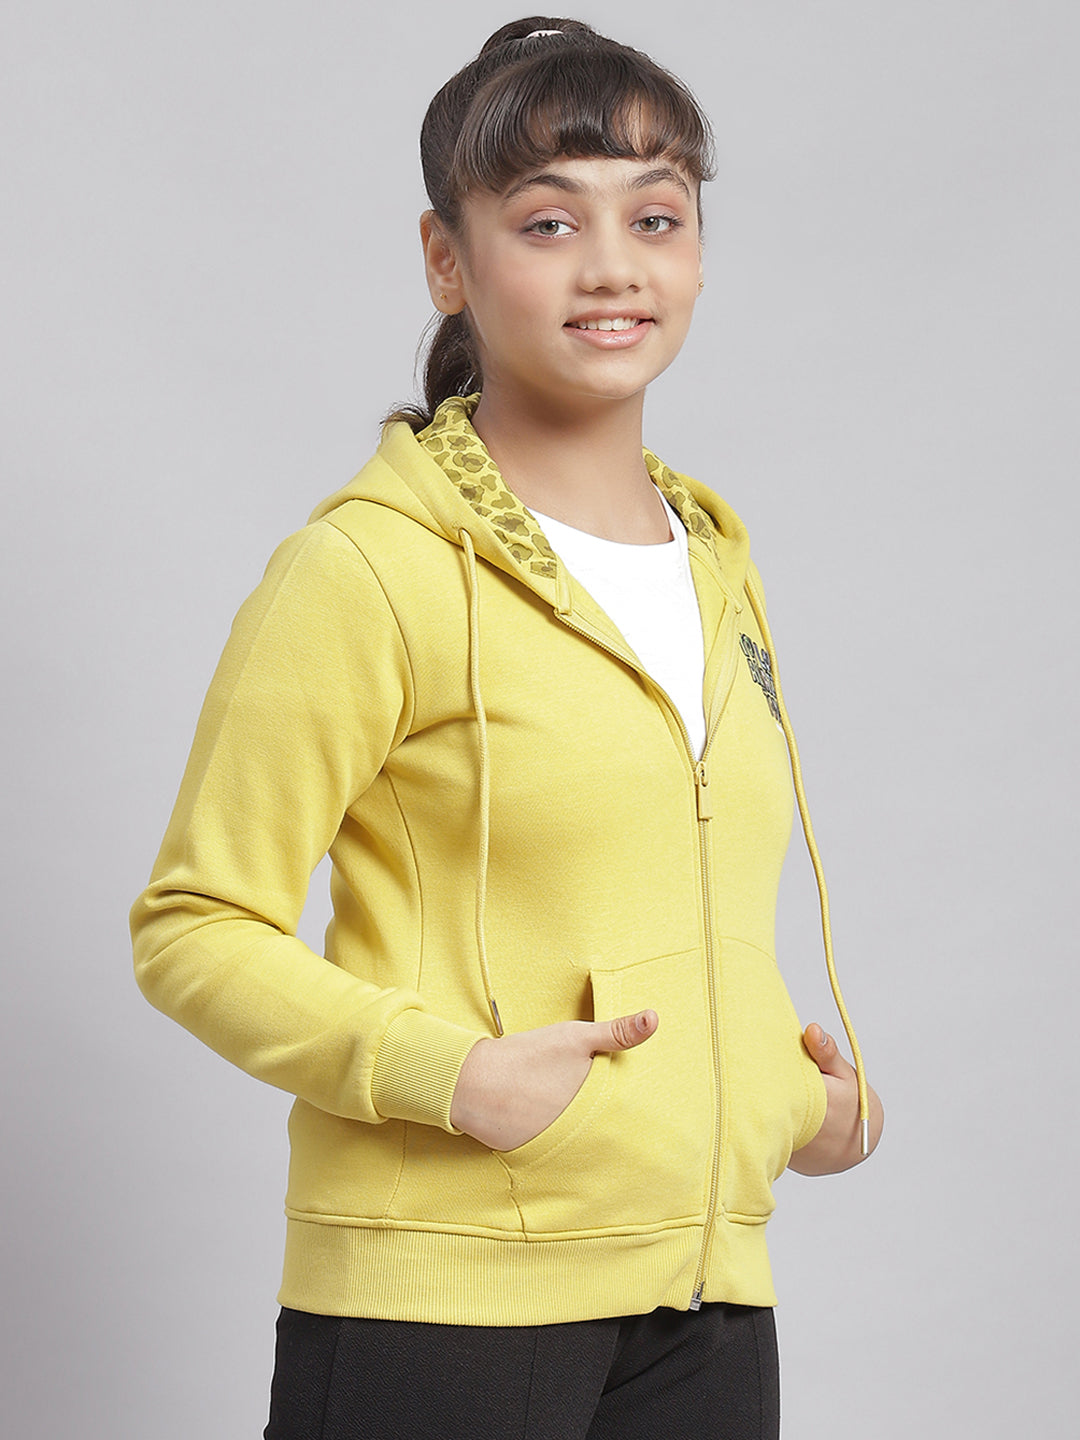 Girls Yellow Solid Hooded Full Sleeve Sweatshirt